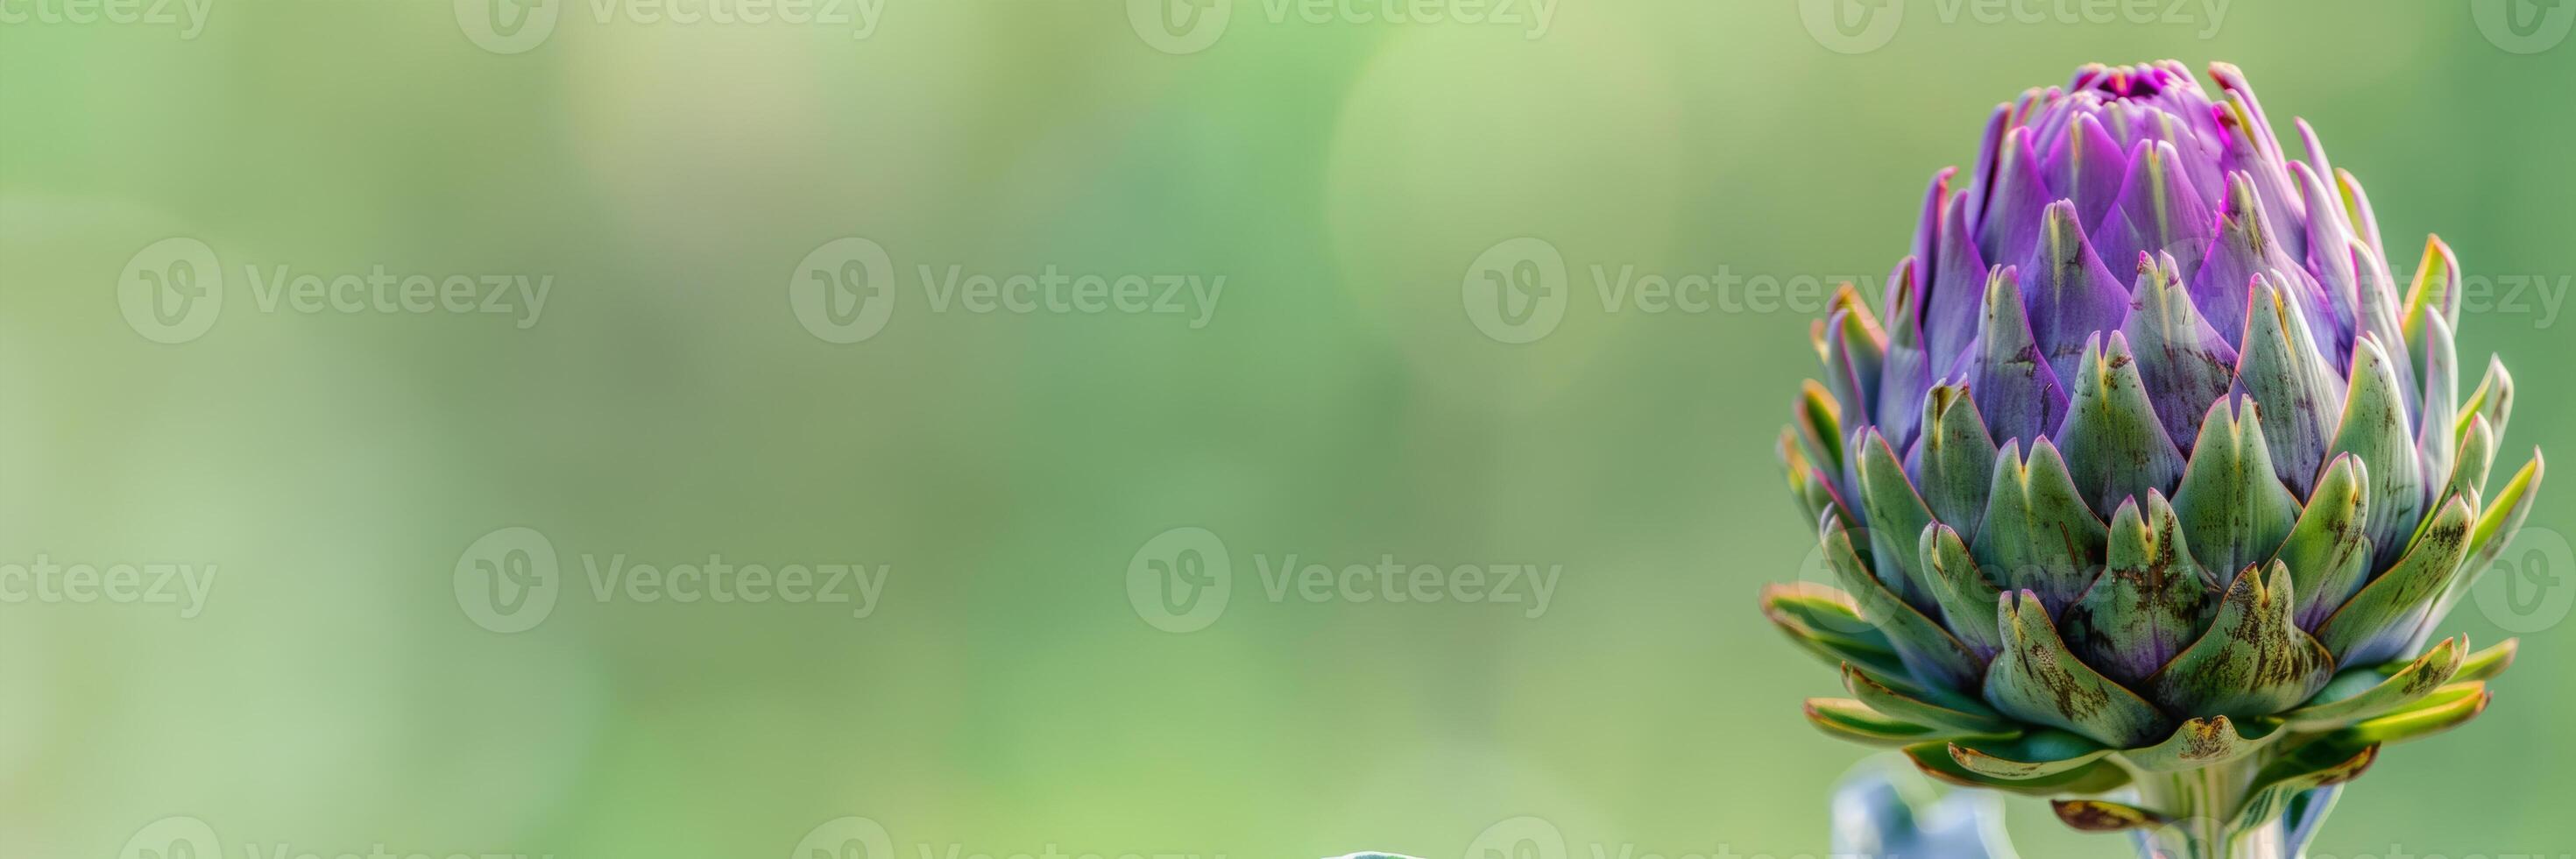 kronärtskocka blomma stänga upp isolerat på en grön lutning bakgrund foto